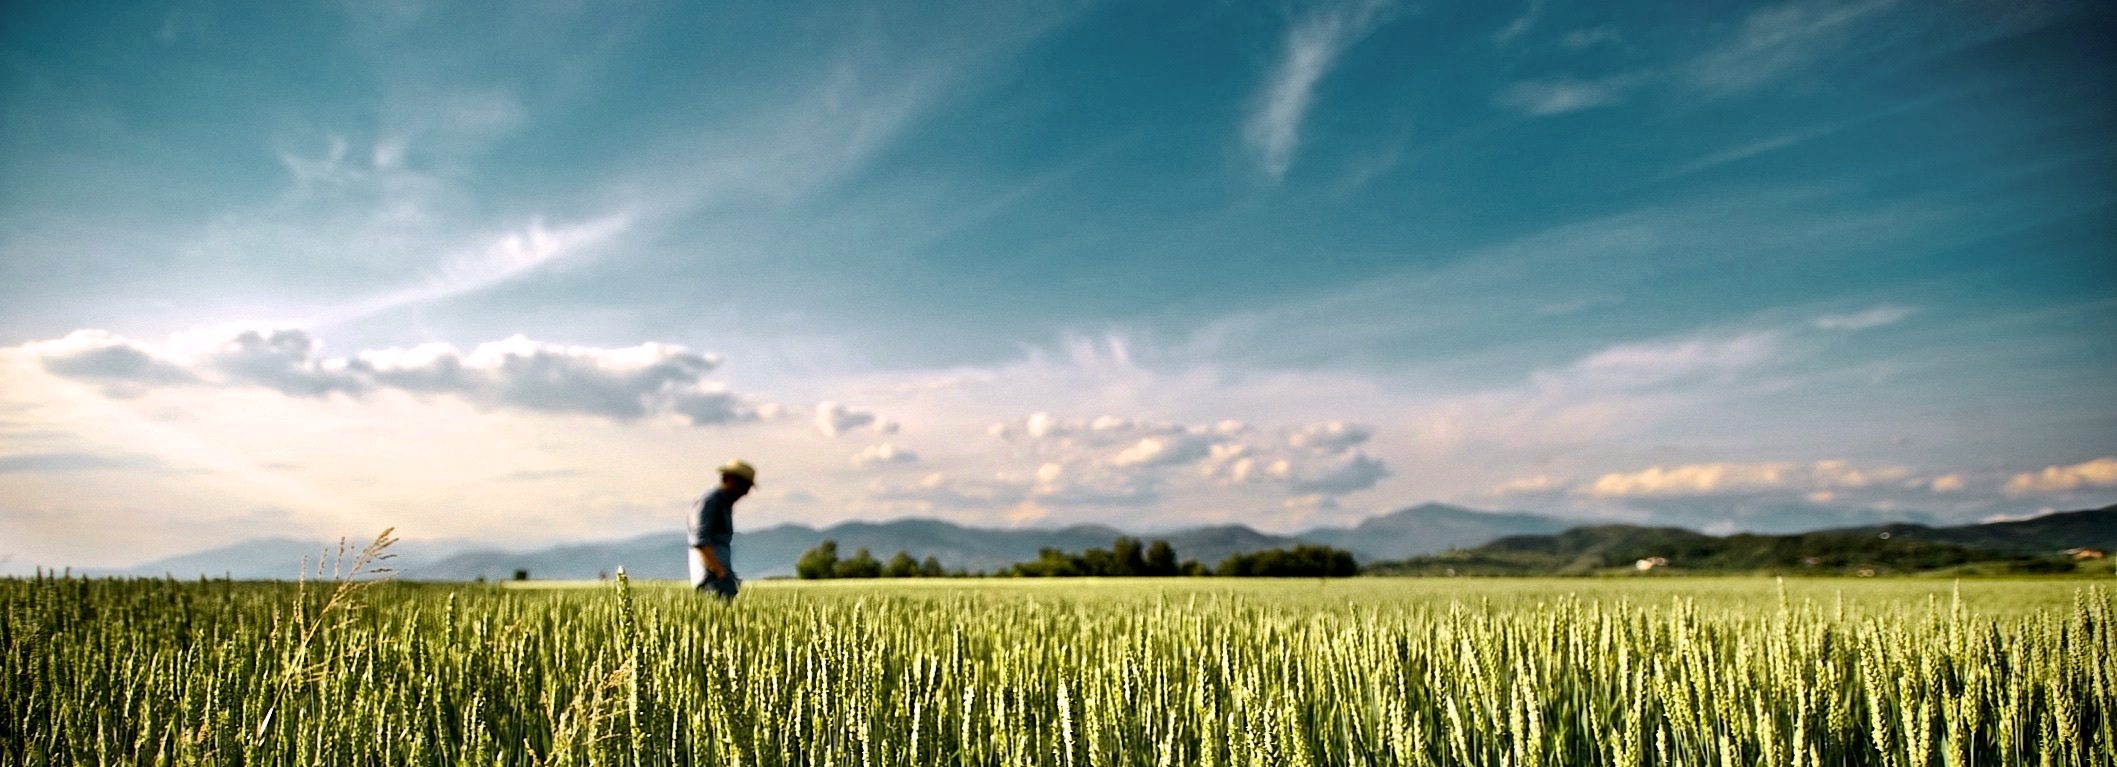 Farmer walking through a corn field.